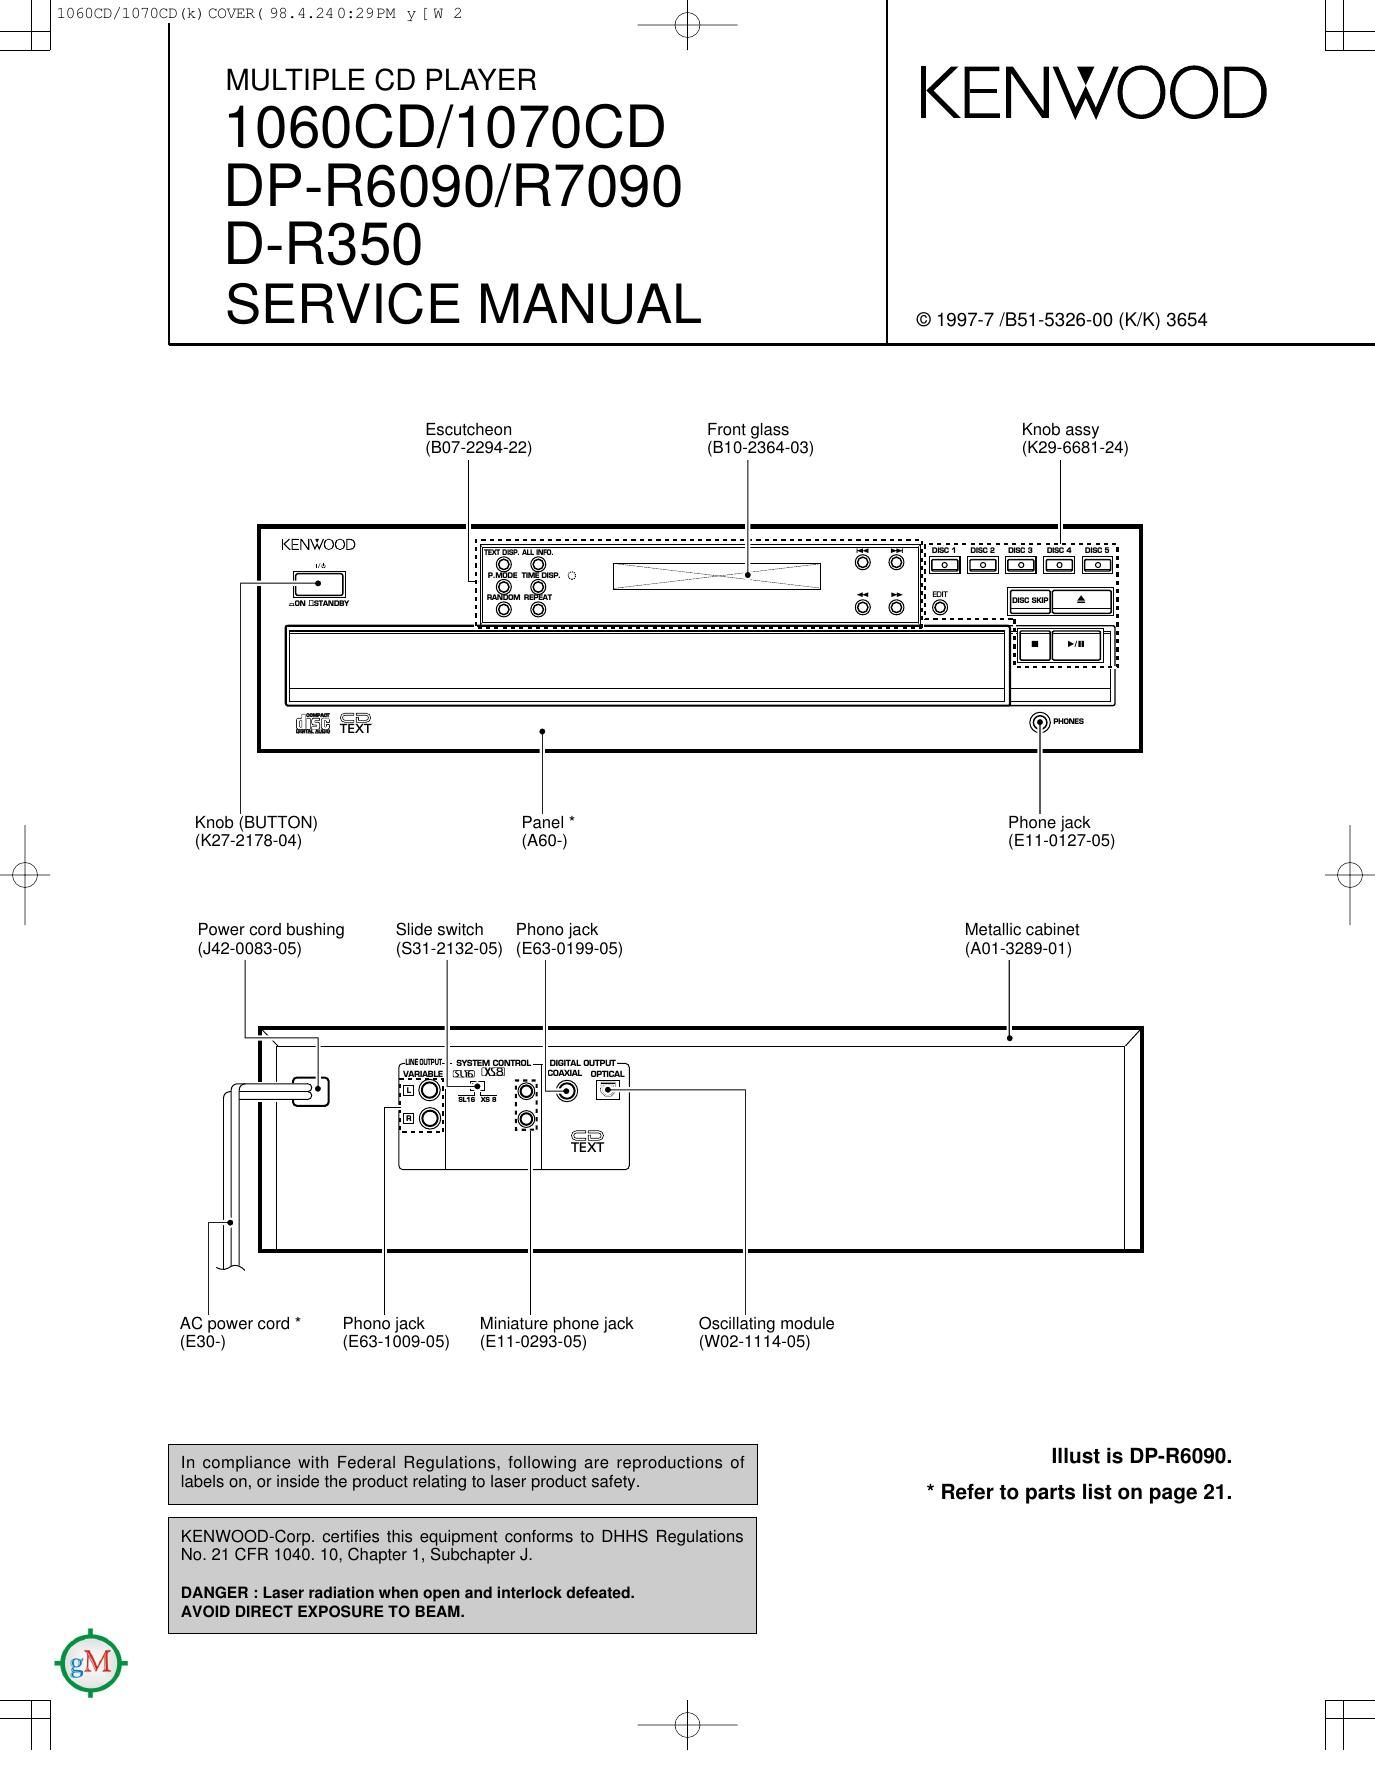 Kenwood DPR 6090 Service Manual